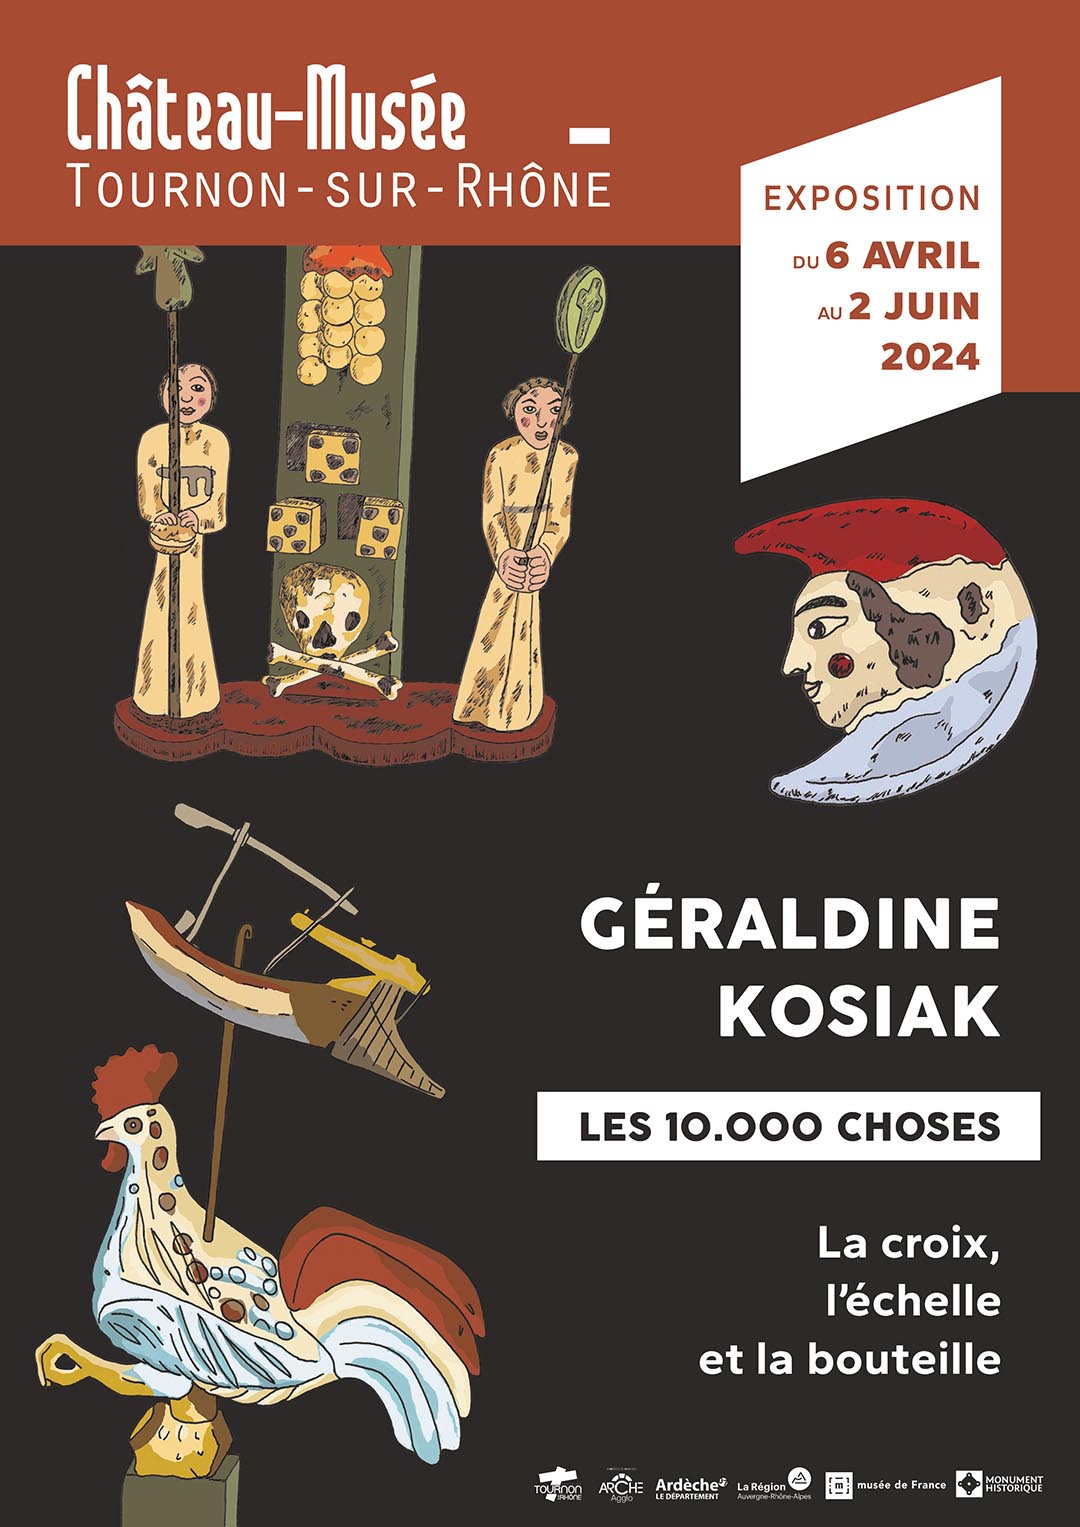 EXPOSITION DE Géraldine Kosiak du 6 avril au 12 juin 2024 au Château-musée